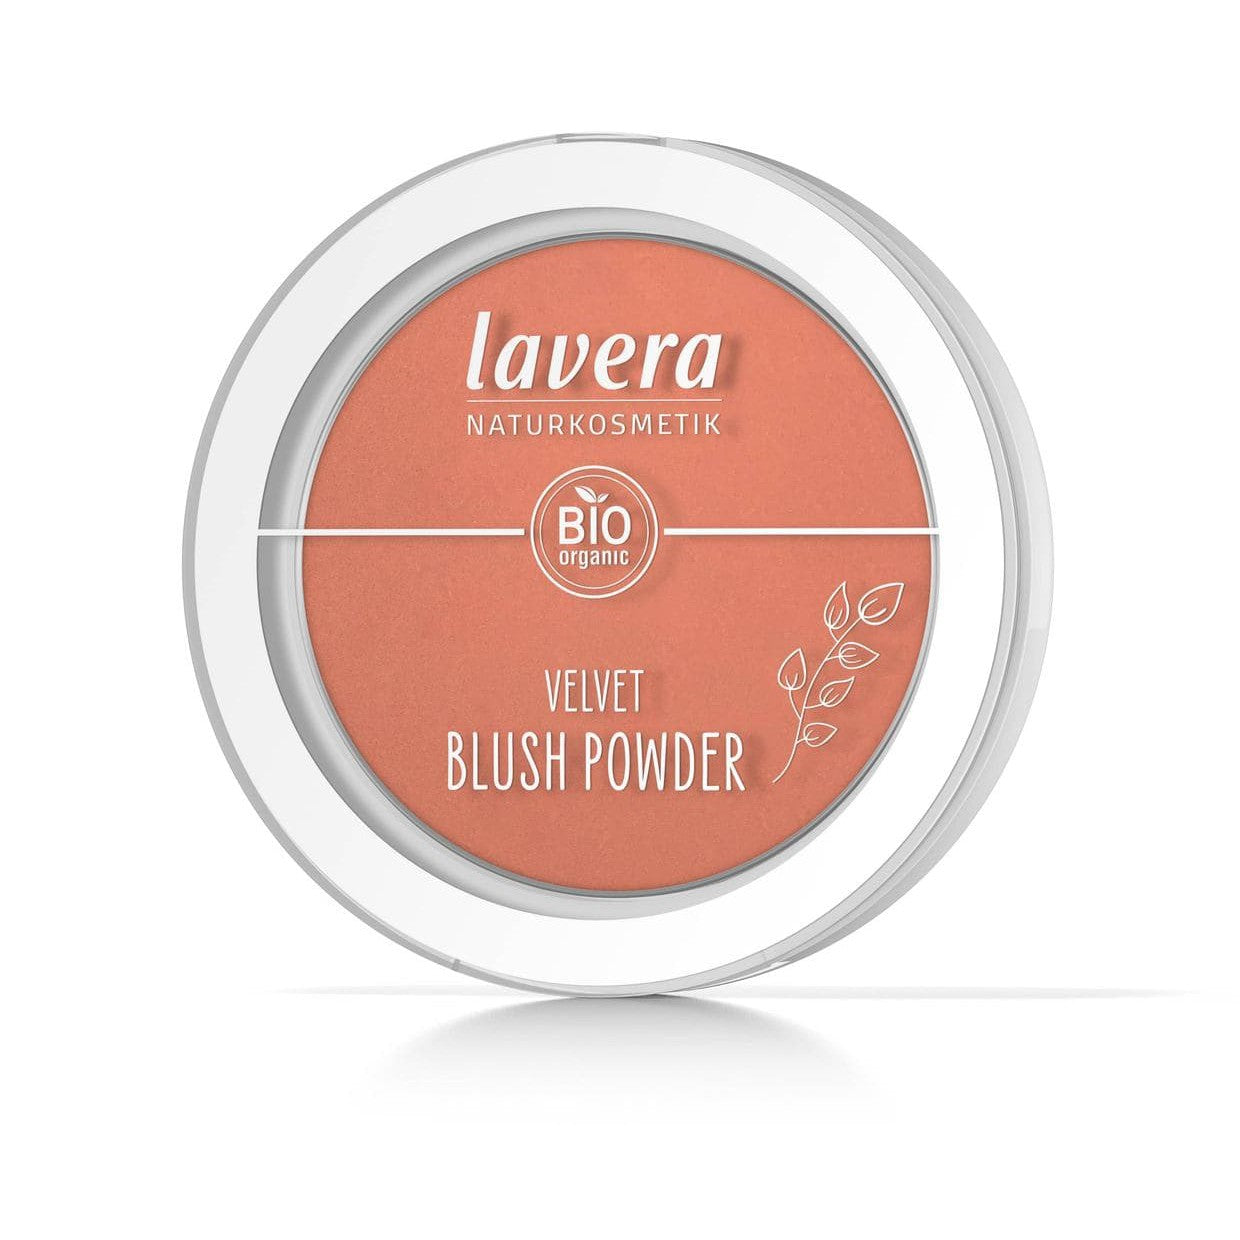 Lavera Velvet poskipuna Rosy Peach 01